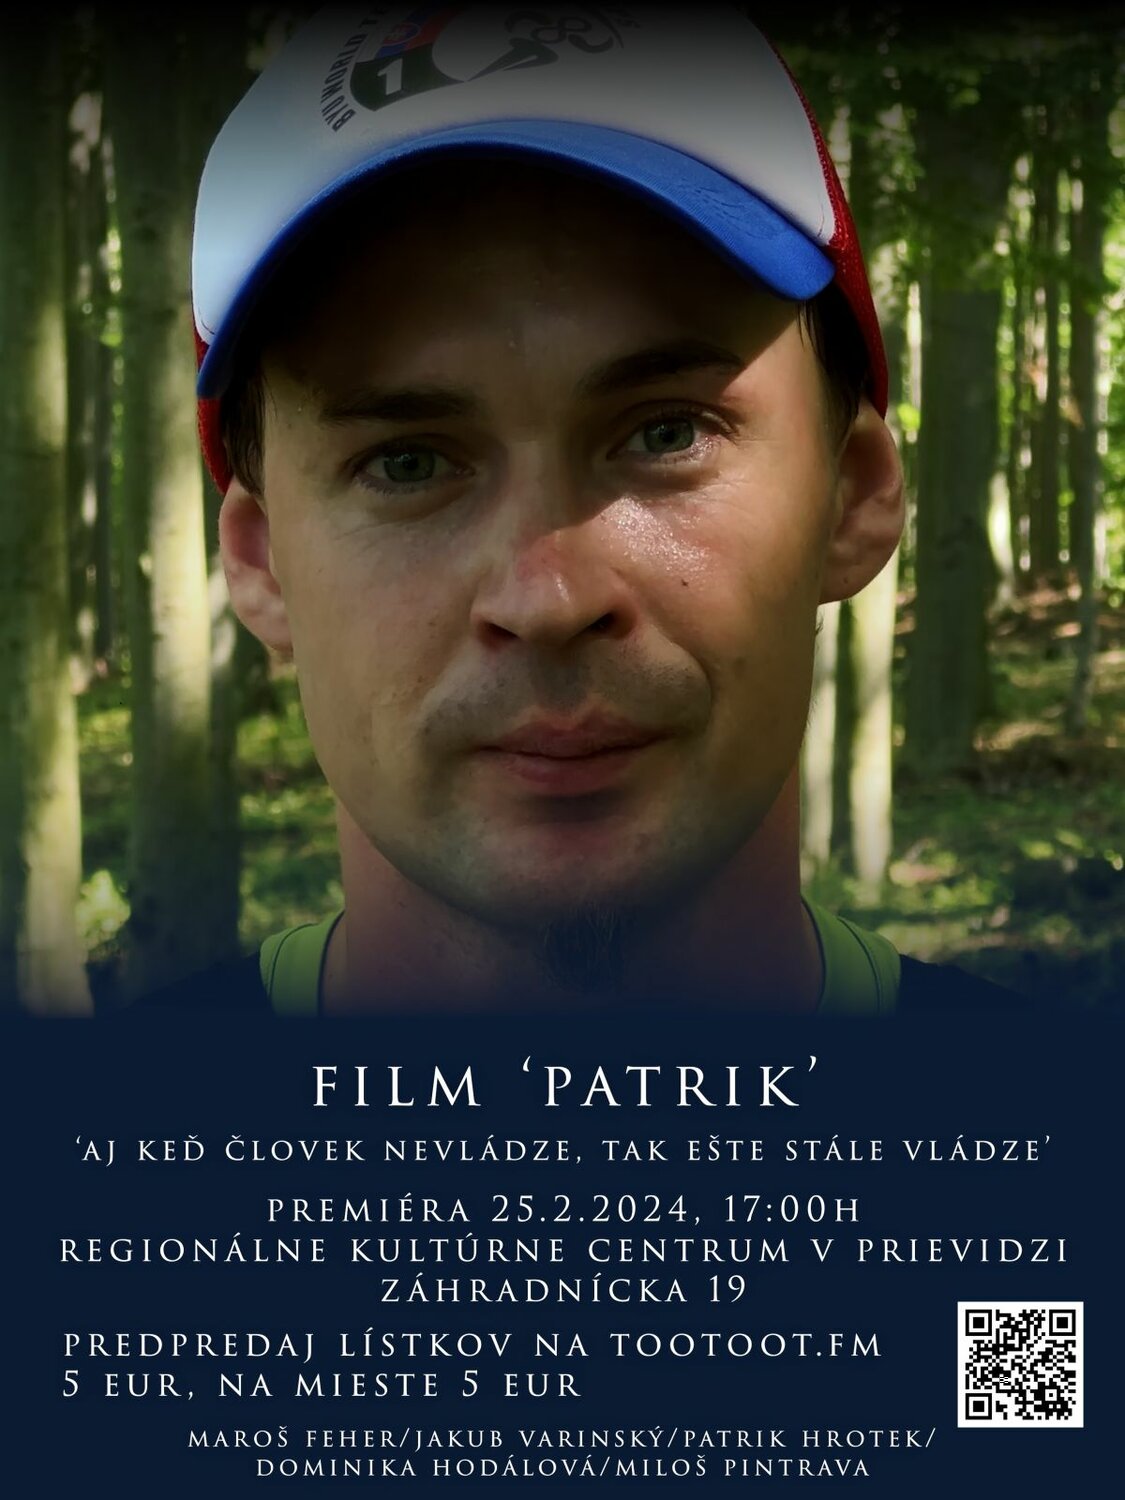 Premiéra filmu PATRIK - ultra bežec Patrik Hrotek z Hornej Vsi